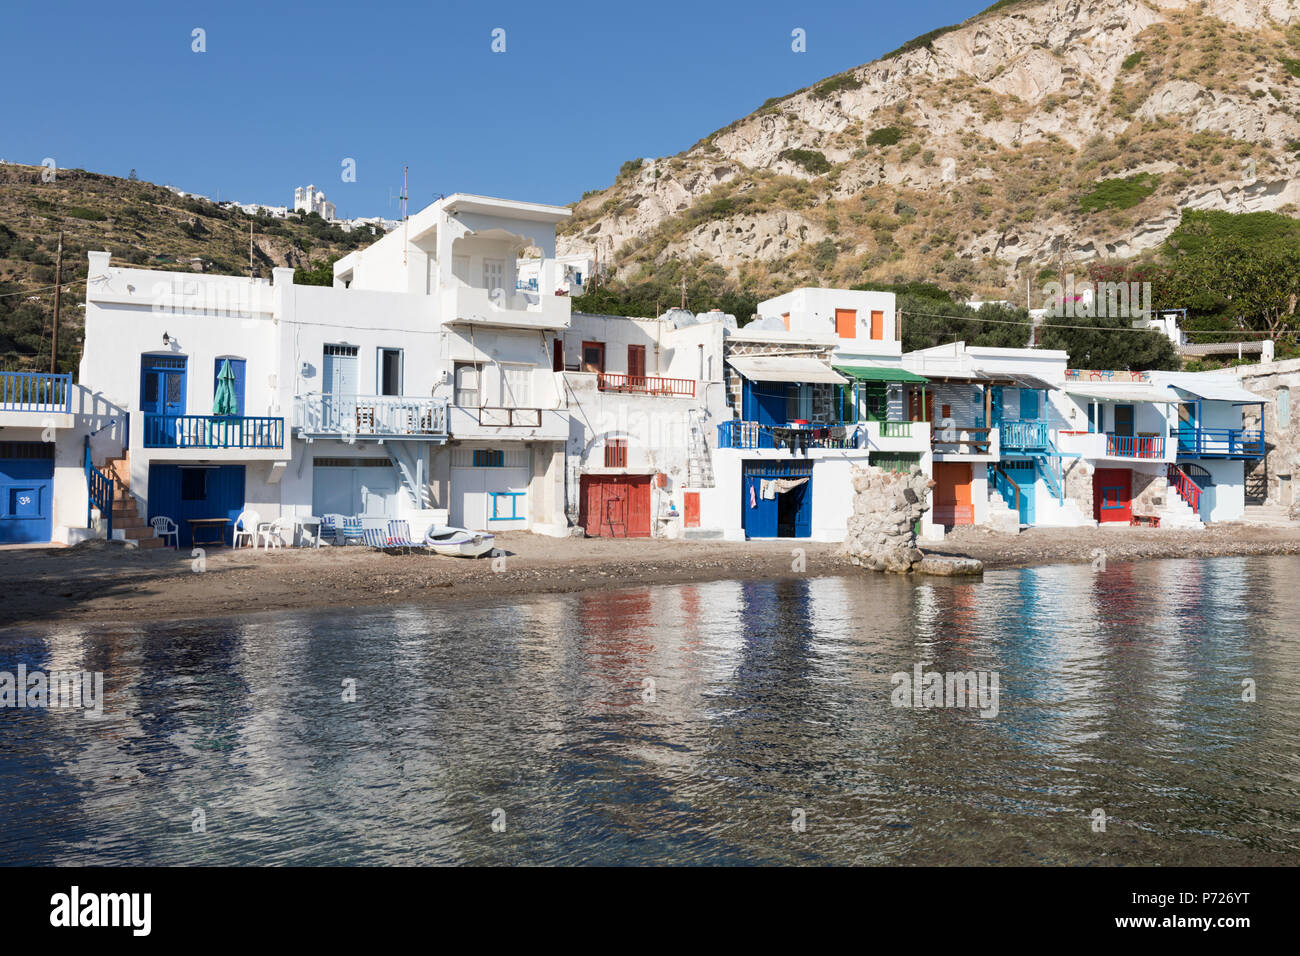 Le bateau de pêcheurs pittoresque de Plaka avec maisons sur la colline, Klima, Milos, Cyclades, Mer Égée, îles grecques, Grèce, Europe Banque D'Images